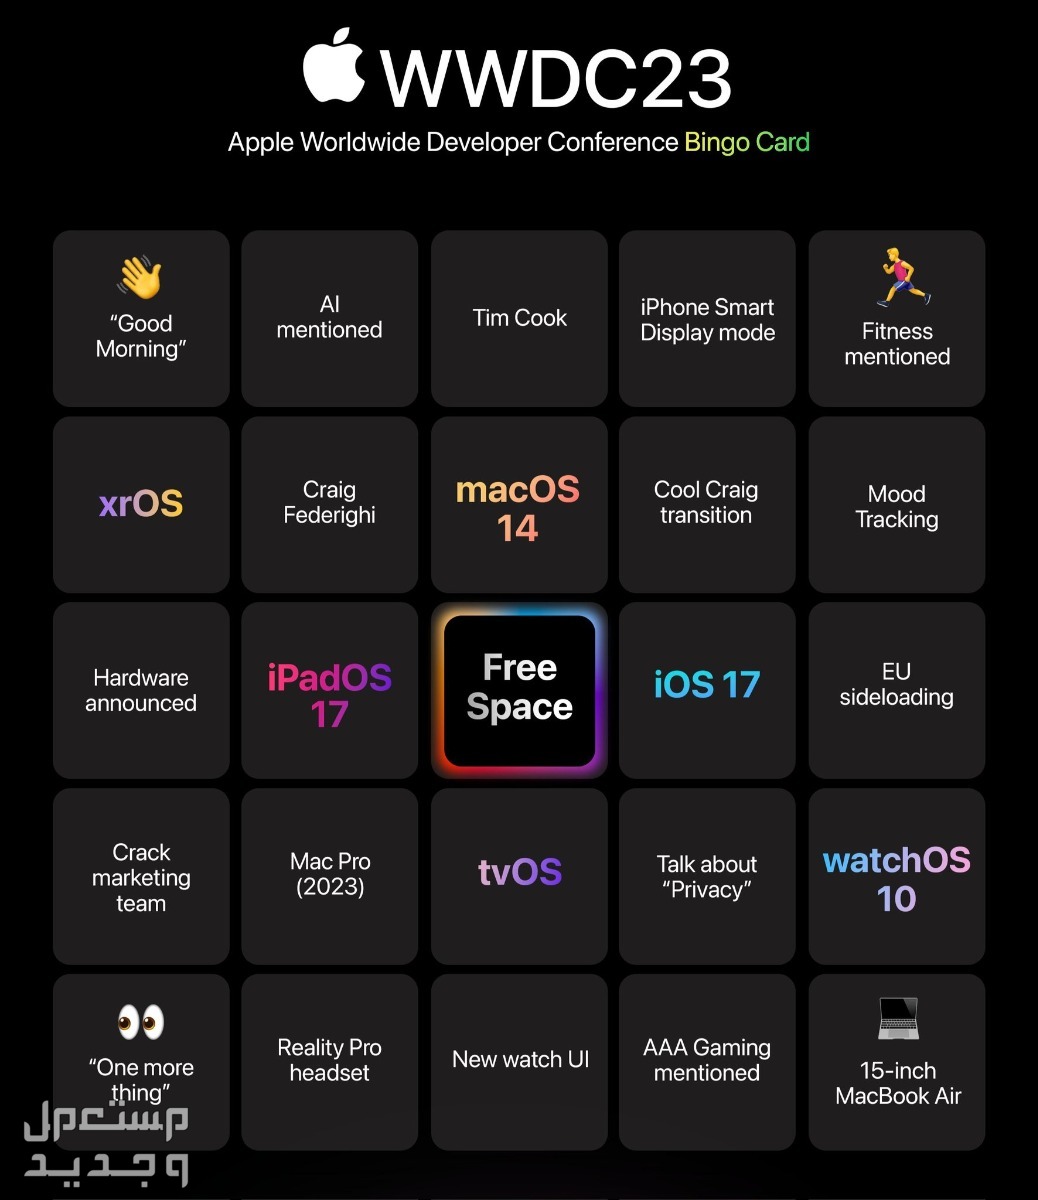 ما الجديد الذي يقدمه نظام ابل الجديد iOS 17 في الأردن